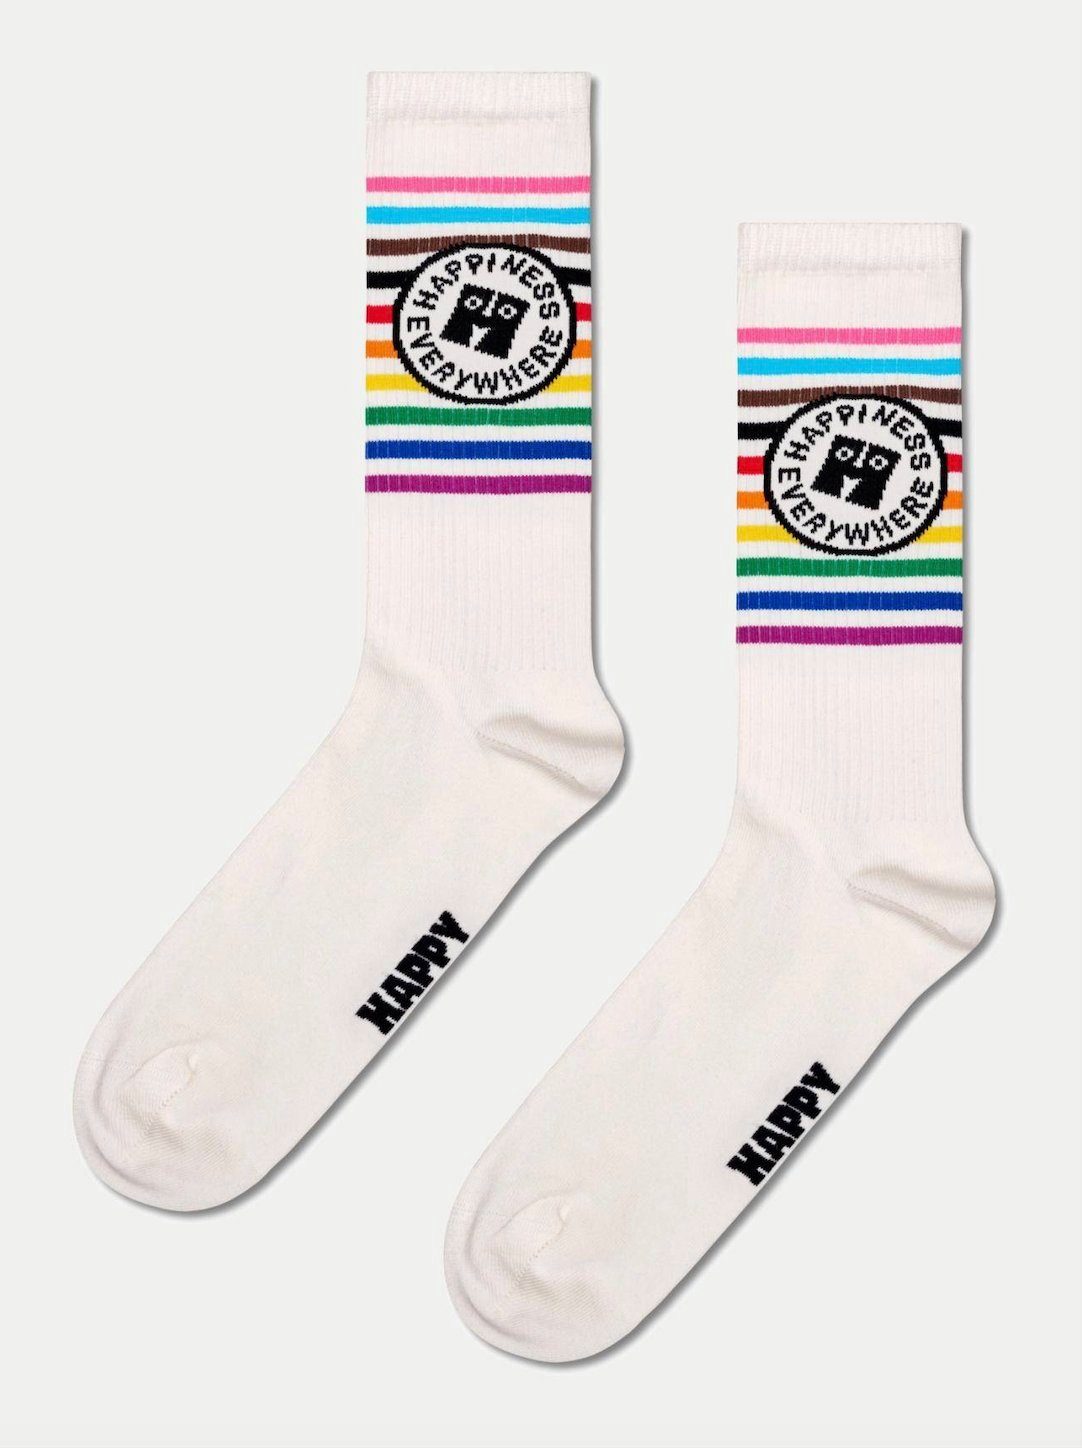 Happiness Freizeitsocken Pride Socks Happy Socken